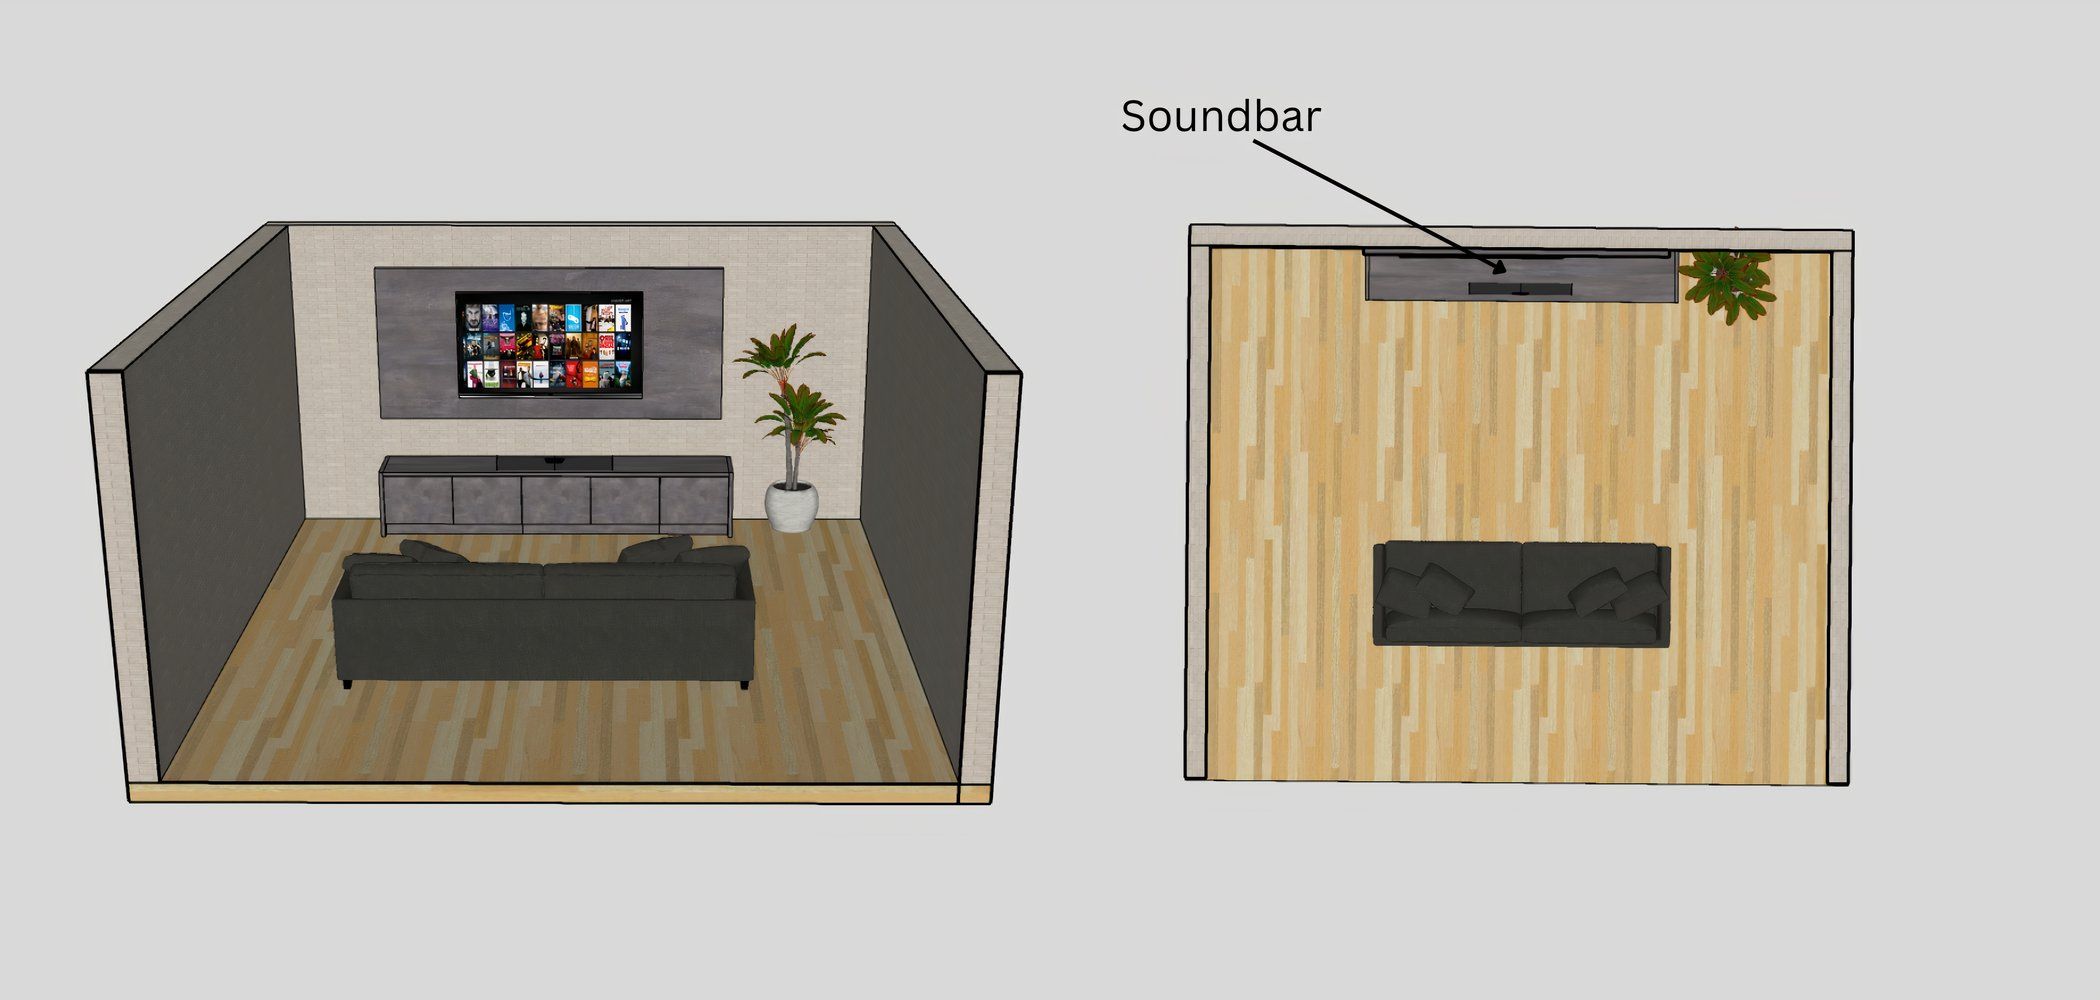 Simple soundbar setup